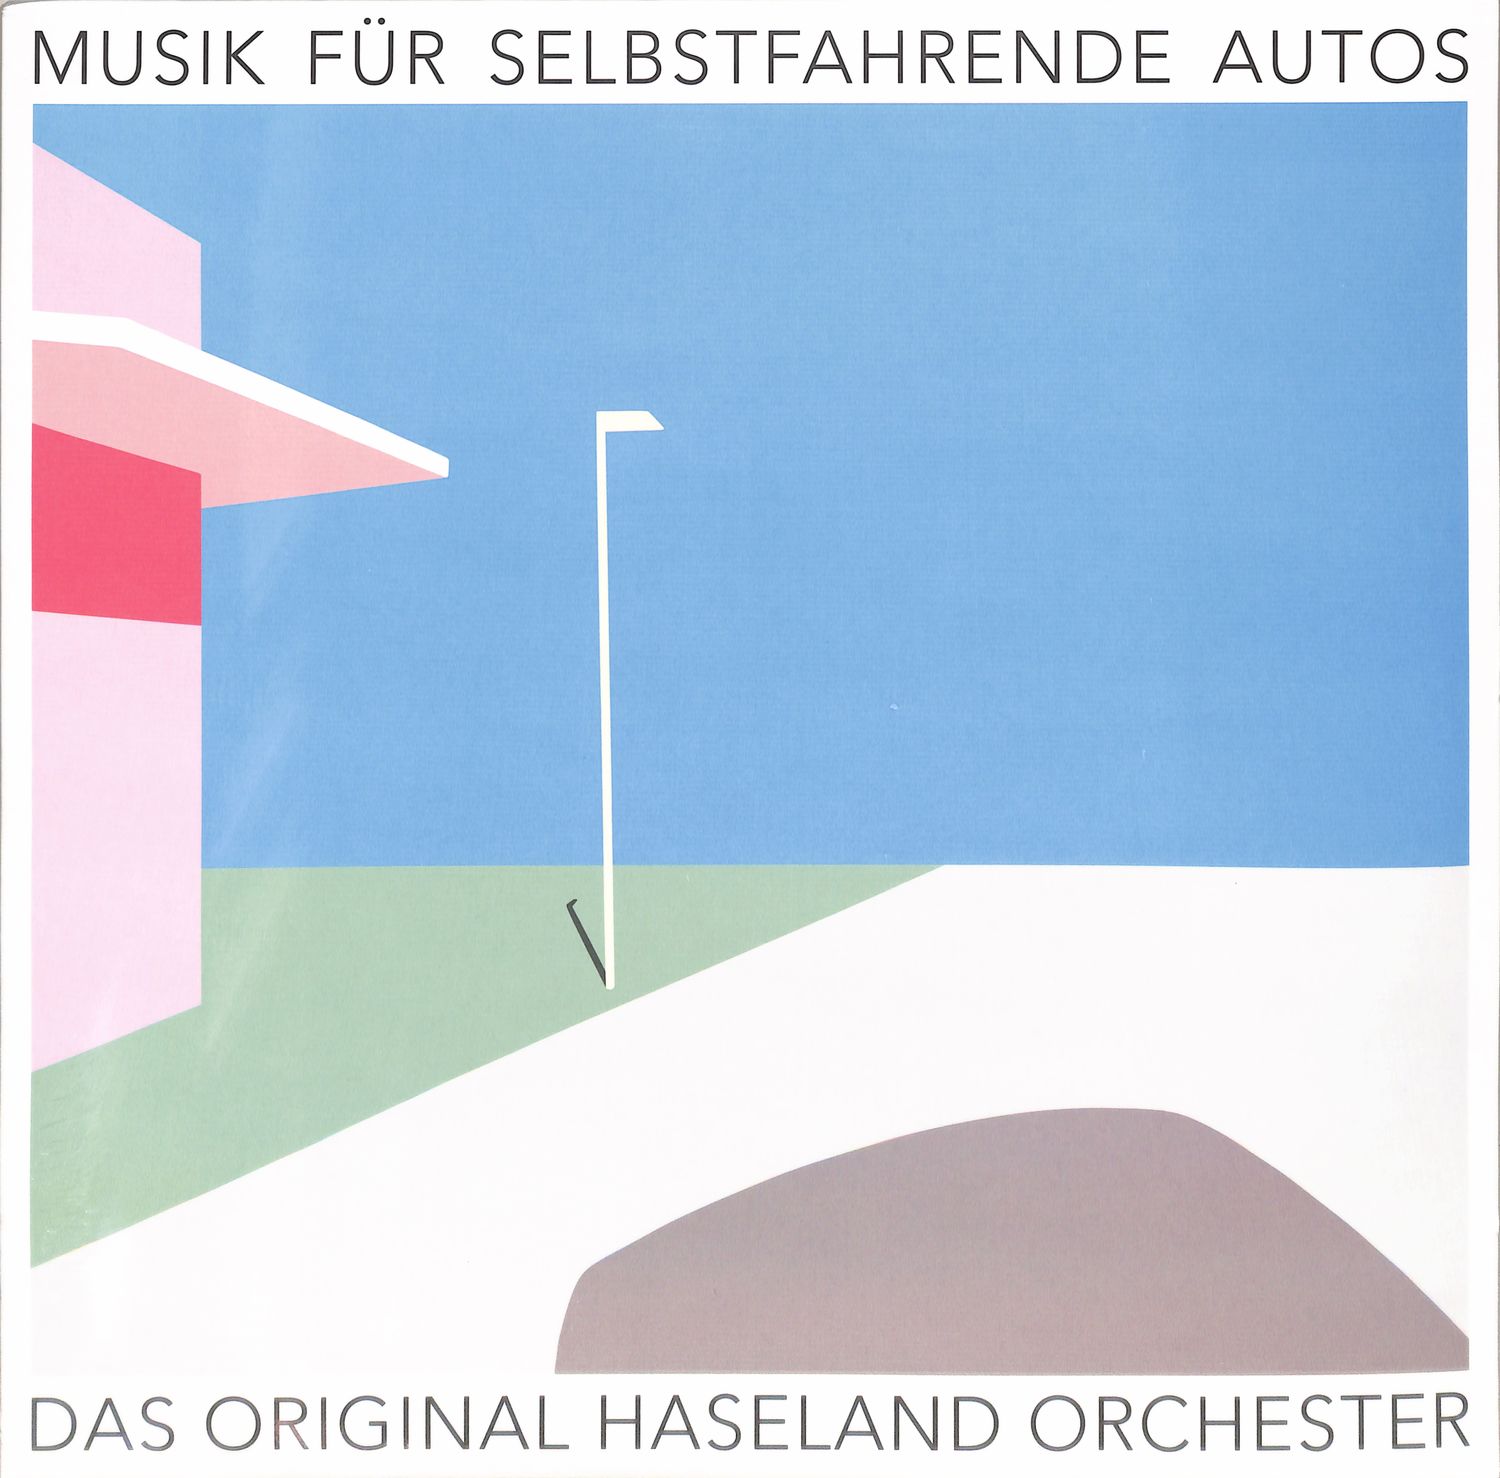 Das Original Haseland Orchester - MUSIK FR SELBSTFAHRENDE AUTOS 